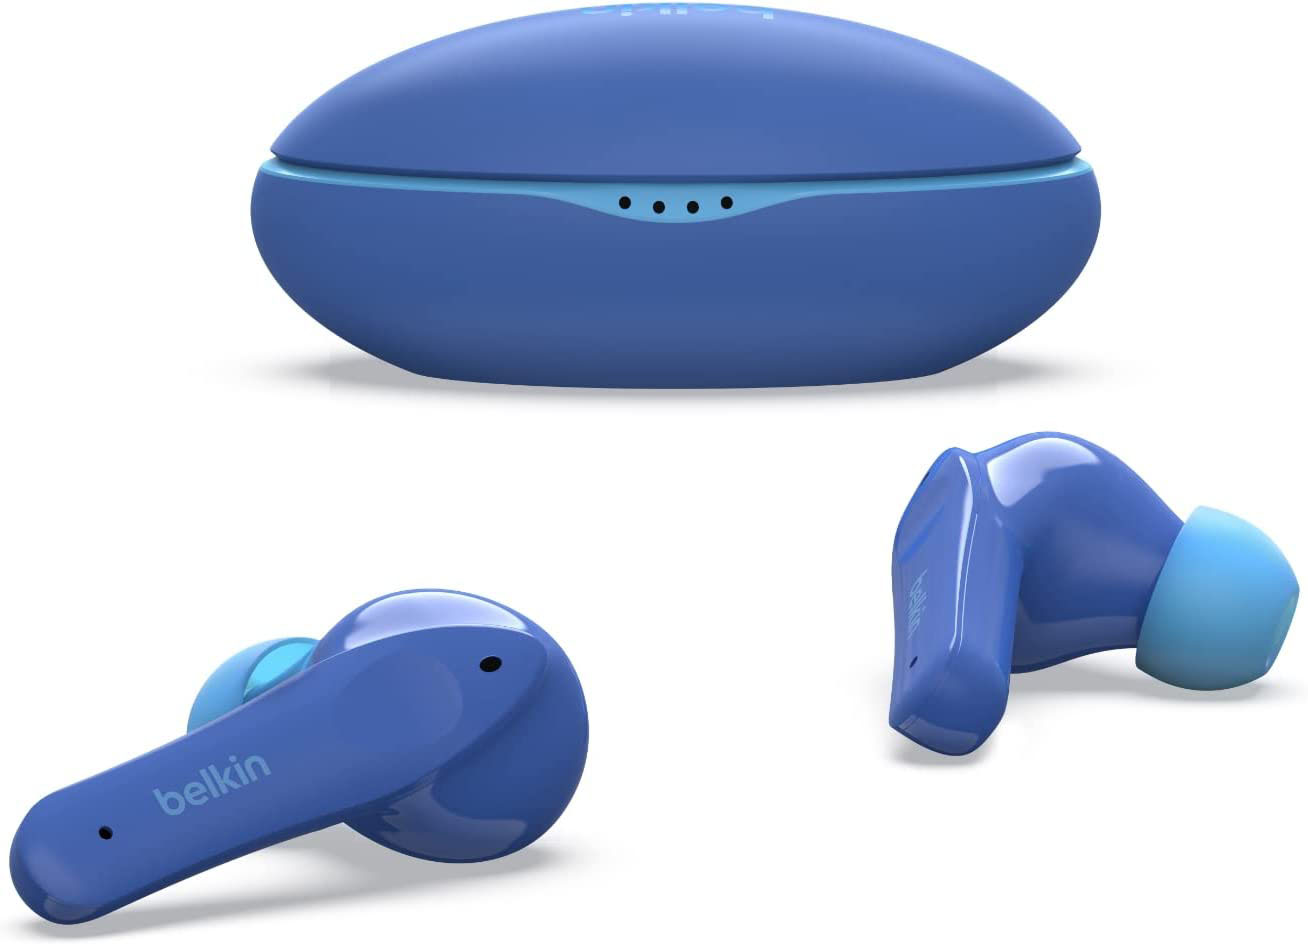 Belkin SoundForm: Nano jetzt verfügbar, im Preis › halbiert Mini